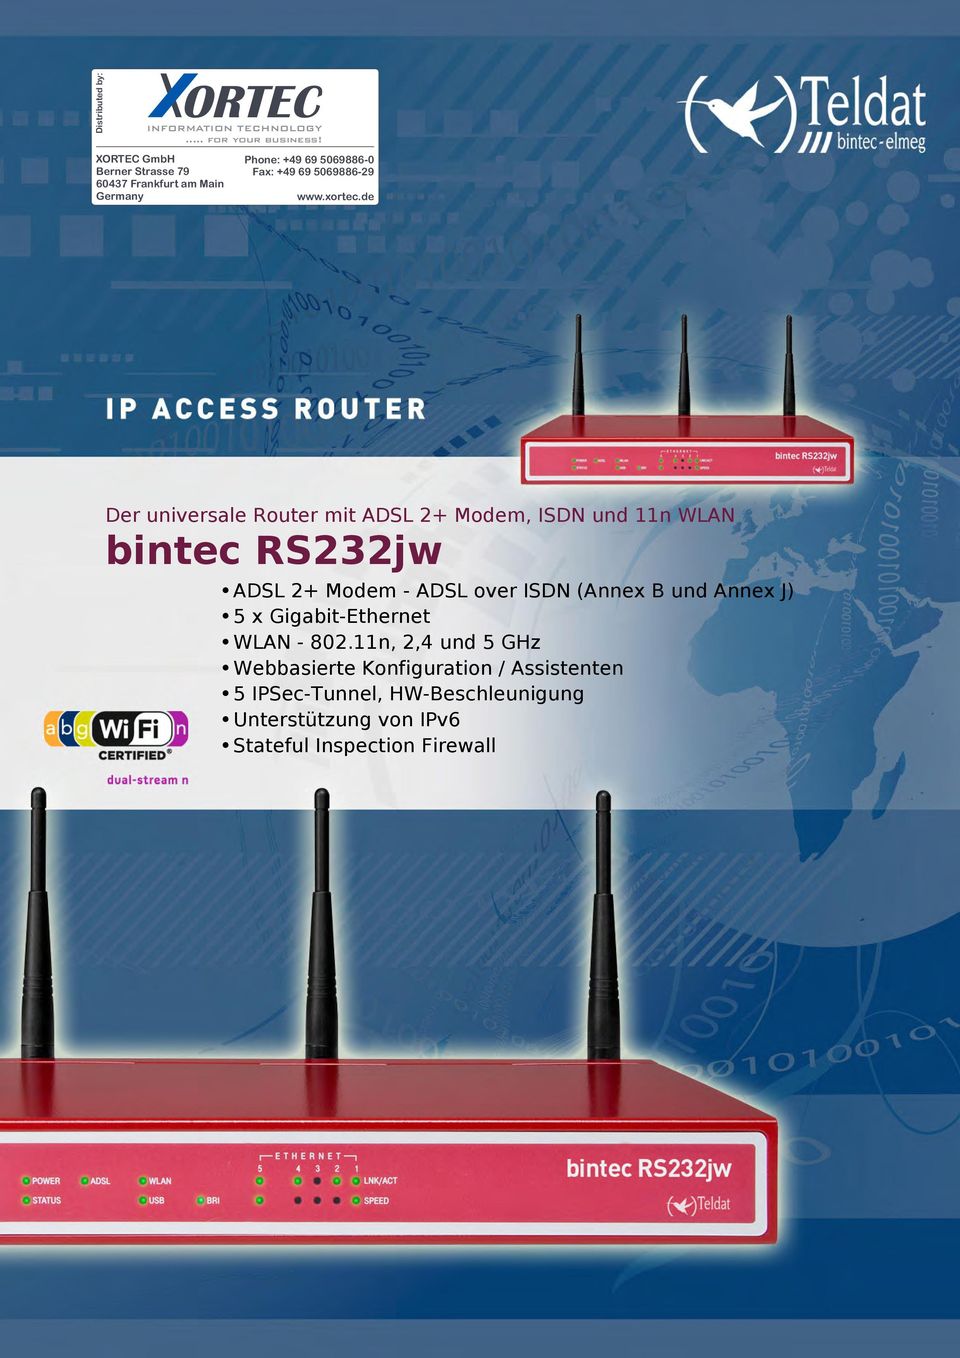 de Der universale Router mit ADSL 2+ Modem, ISDN und 11n WLAN ADSL 2+ Modem - ADSL over ISDN (Annex B und Annex J) 5 x